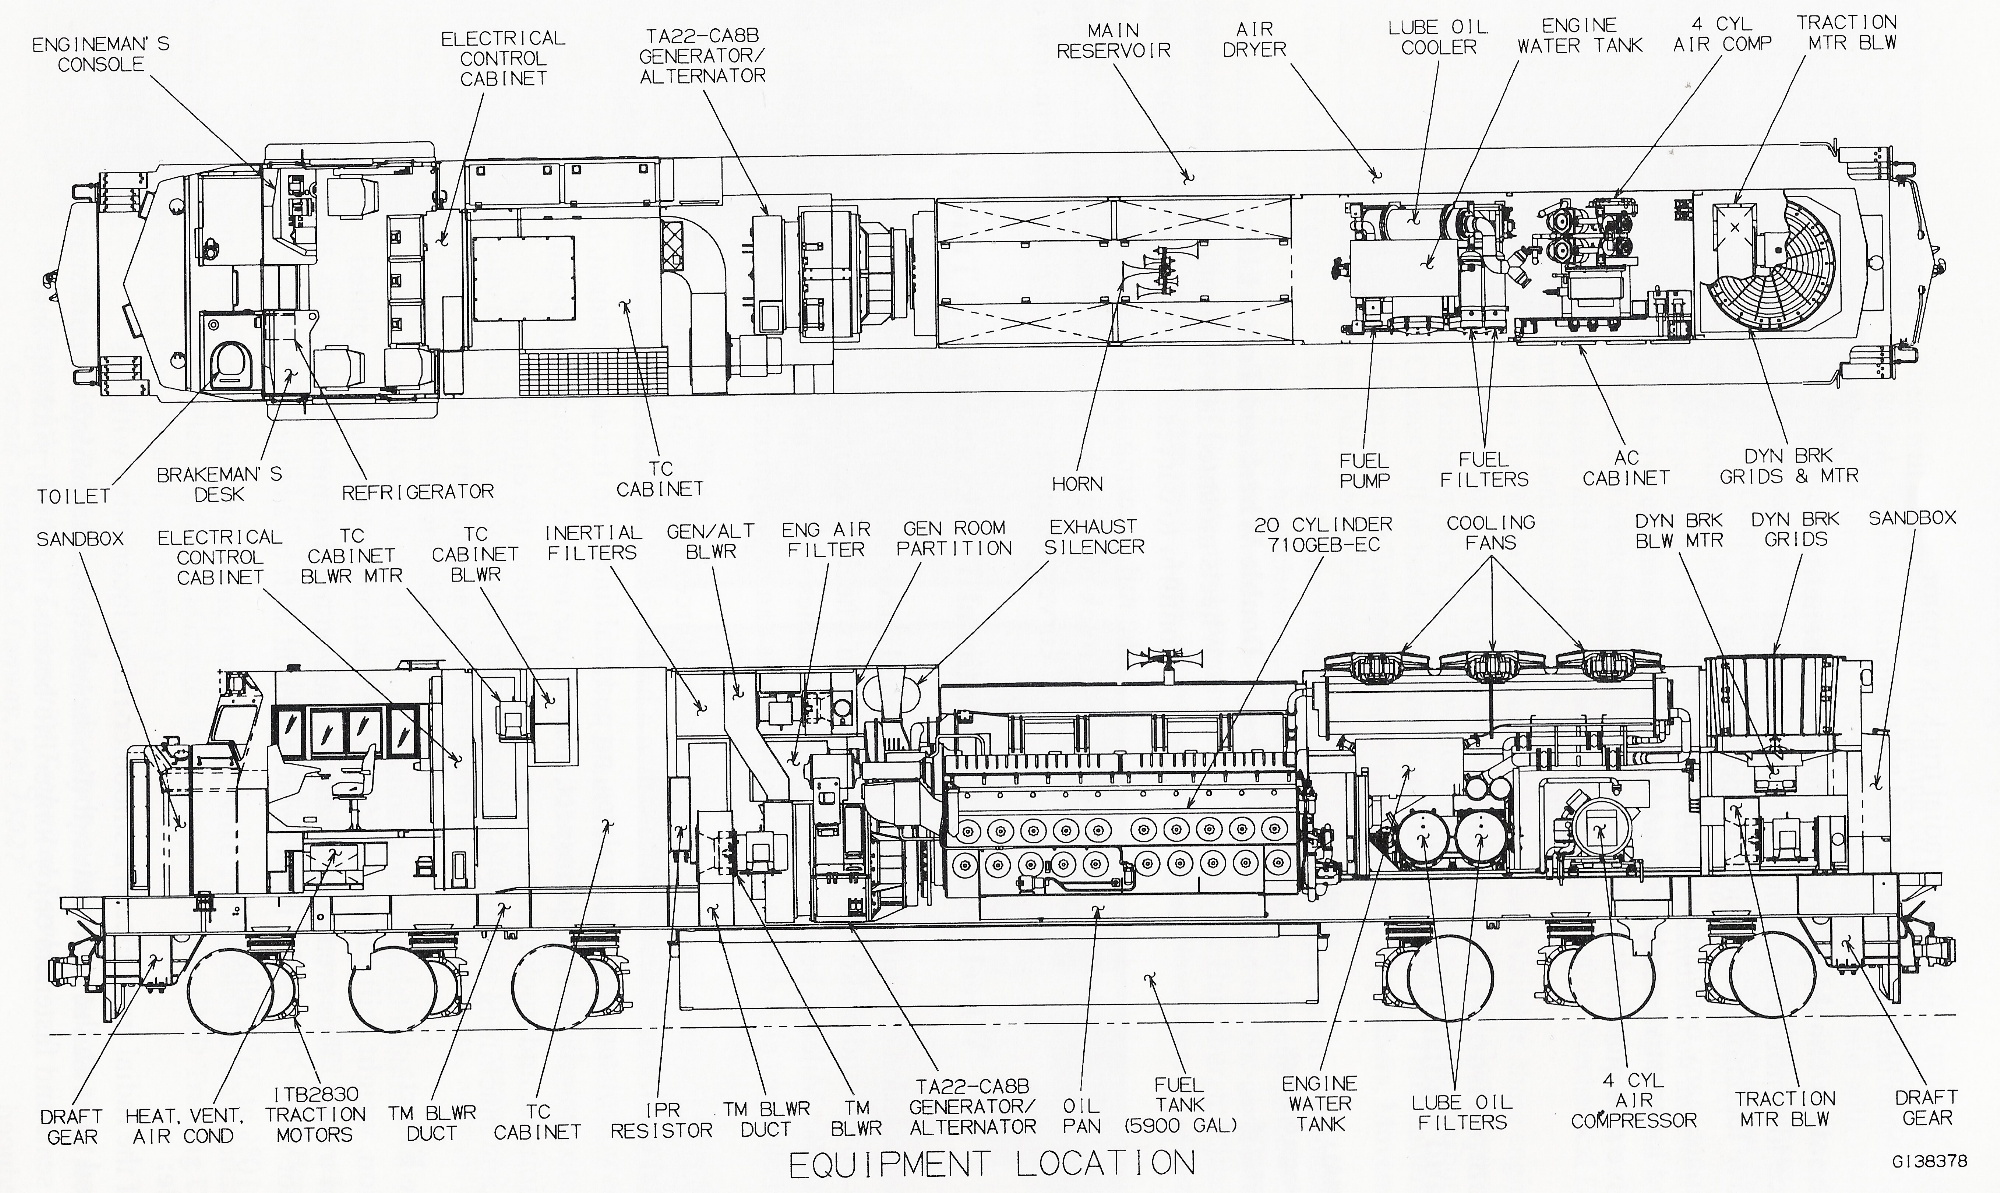 [DIAGRAM] Vintage Ge Electric Locomotive Diagram - MYDIAGRAM.ONLINE